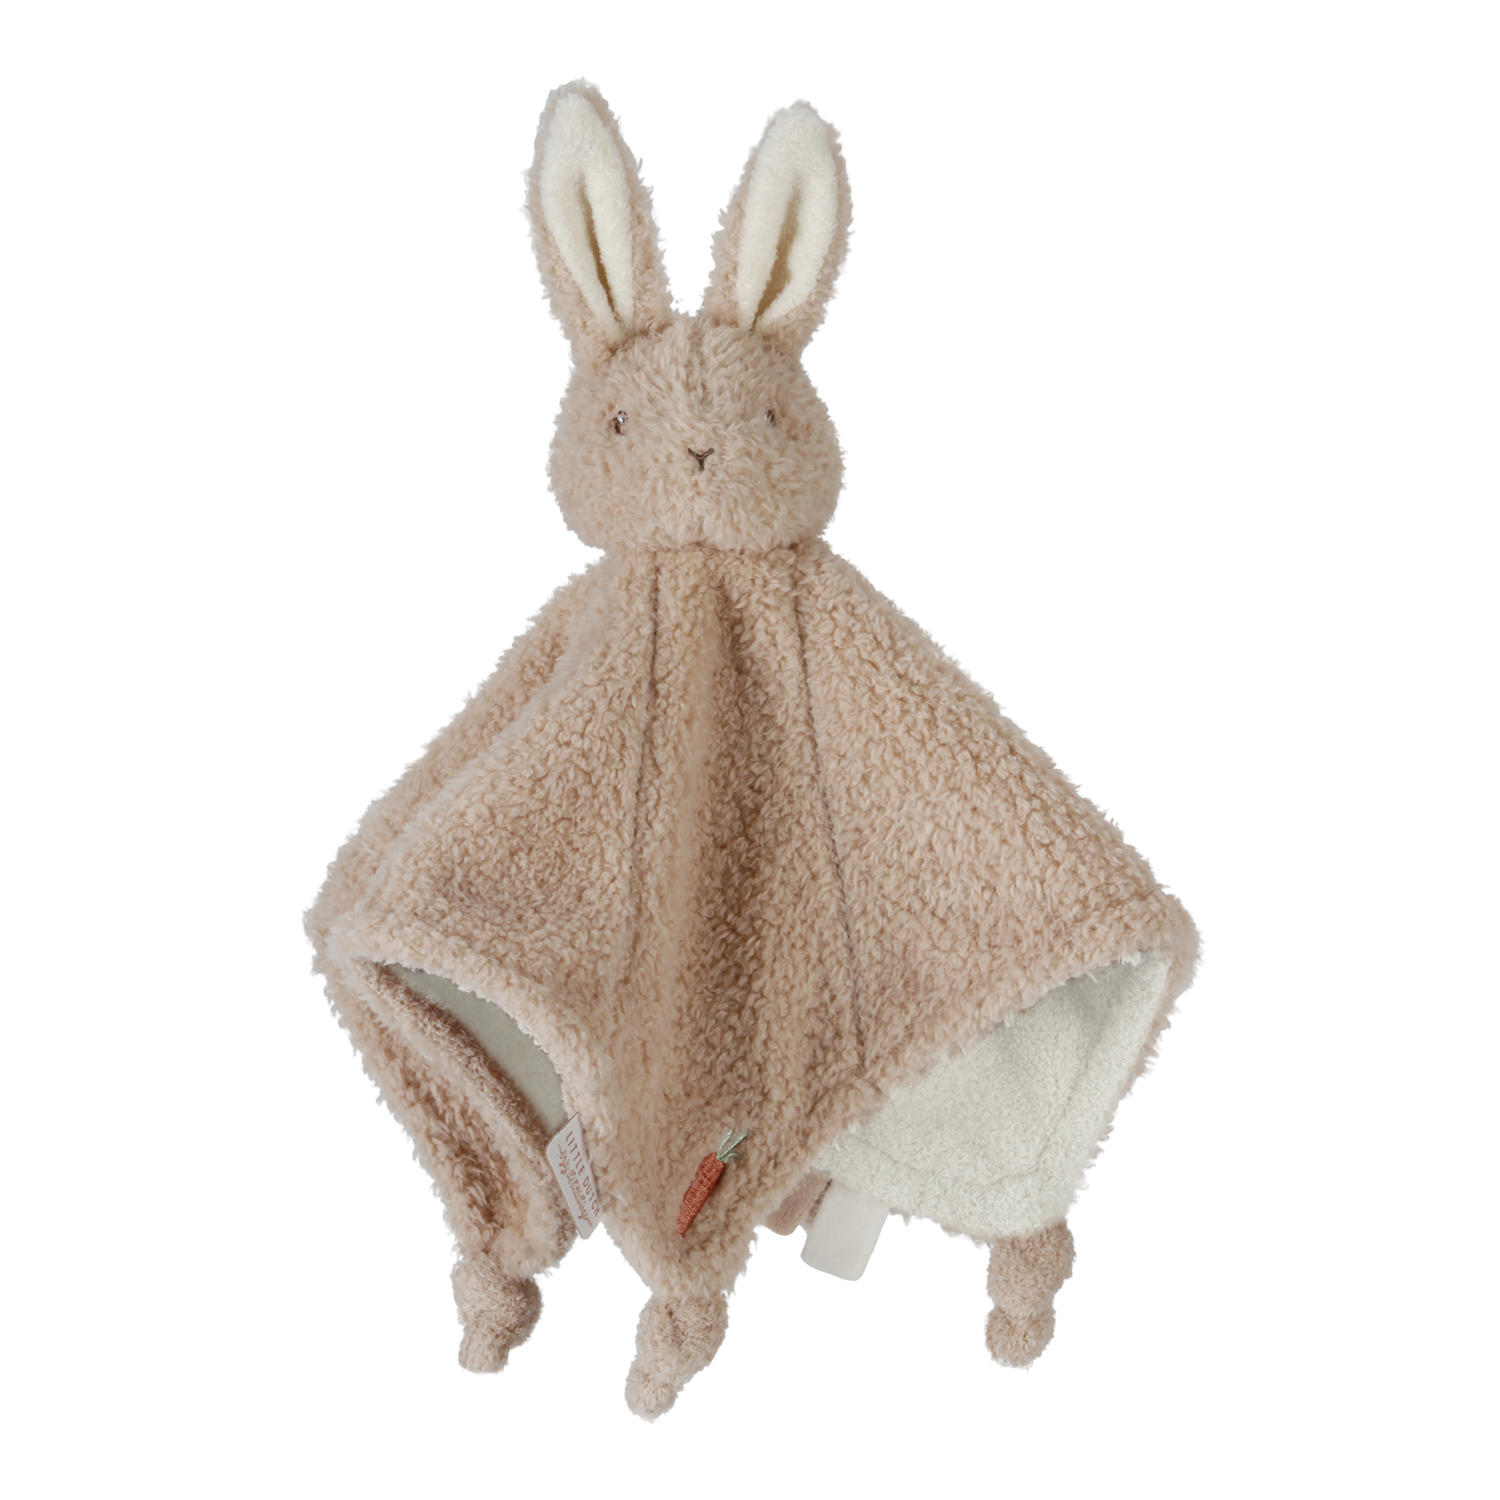 Kuscheltuch Schmusetuch Hase / Baby Bunny Newborn Naturals beige